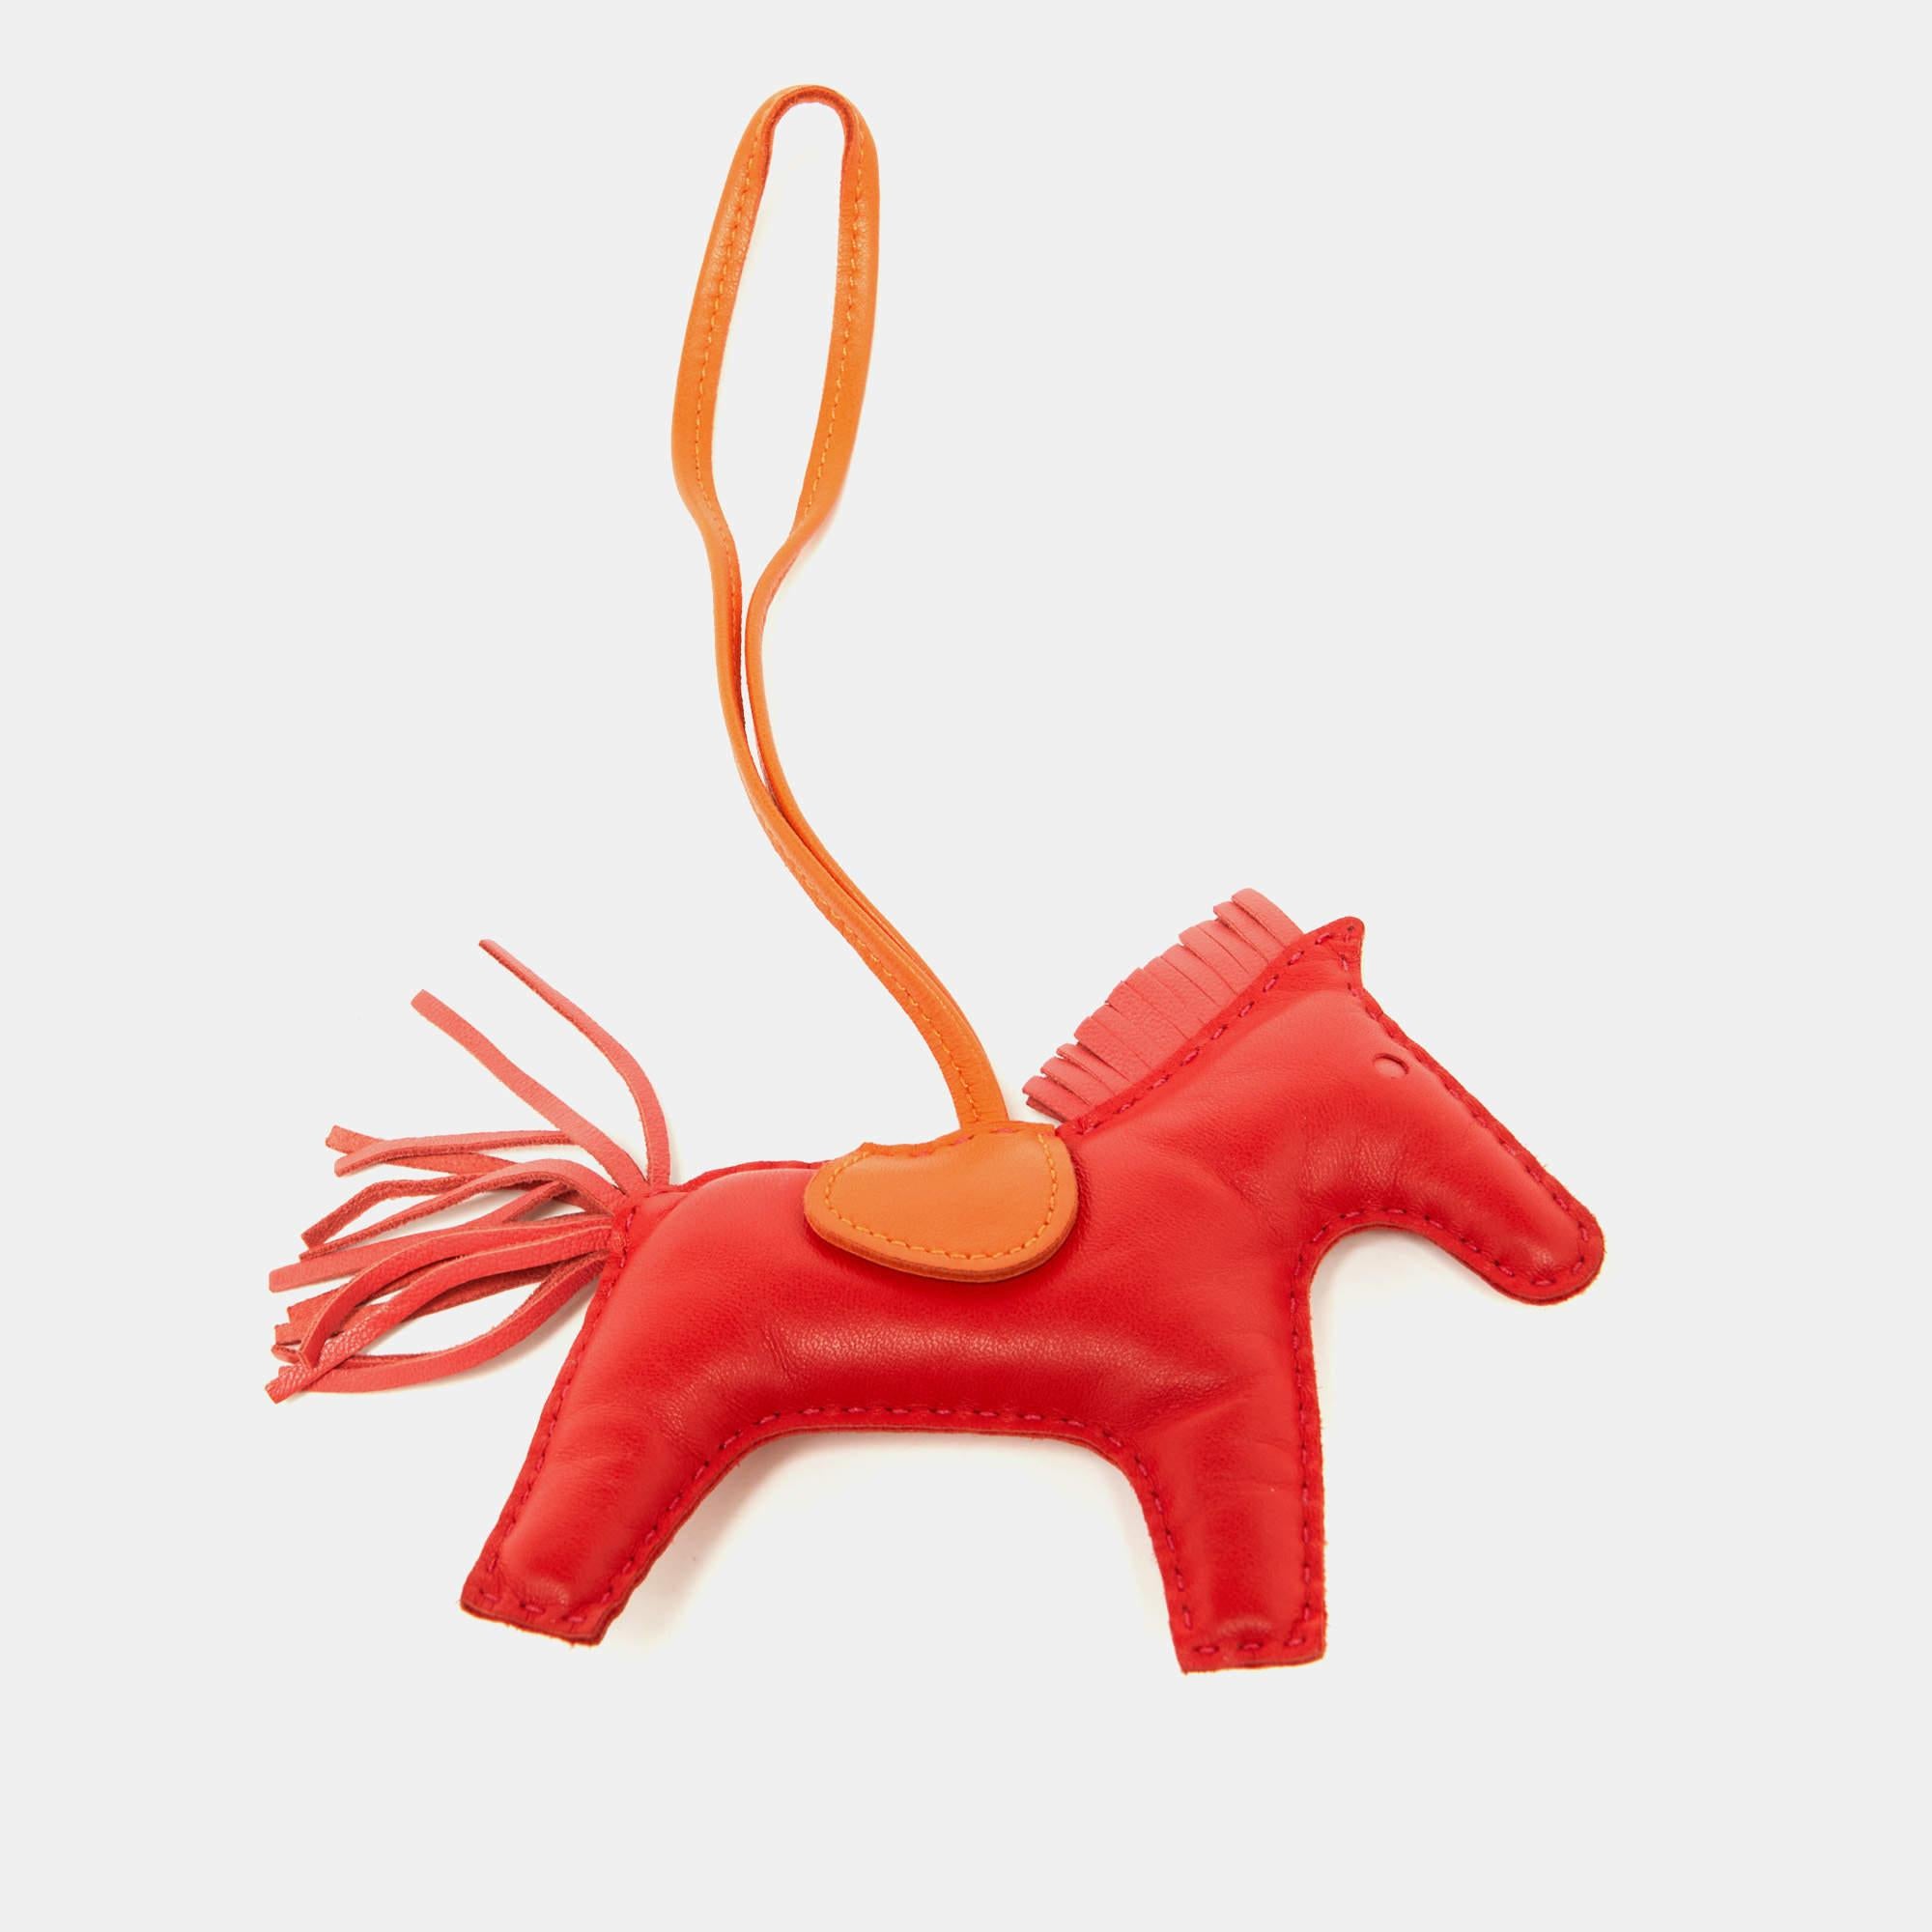 Der Hermes Rodeo Charme ist ein lebhaftes und stilvolles Accessoire. Sie ist aus hochwertigem Leder gefertigt und verfügt über ein vom Rodeo inspiriertes Design mit Fransenakzenten in auffälligen Rot- und Orangetönen. Perfekt, um jeder Handtasche